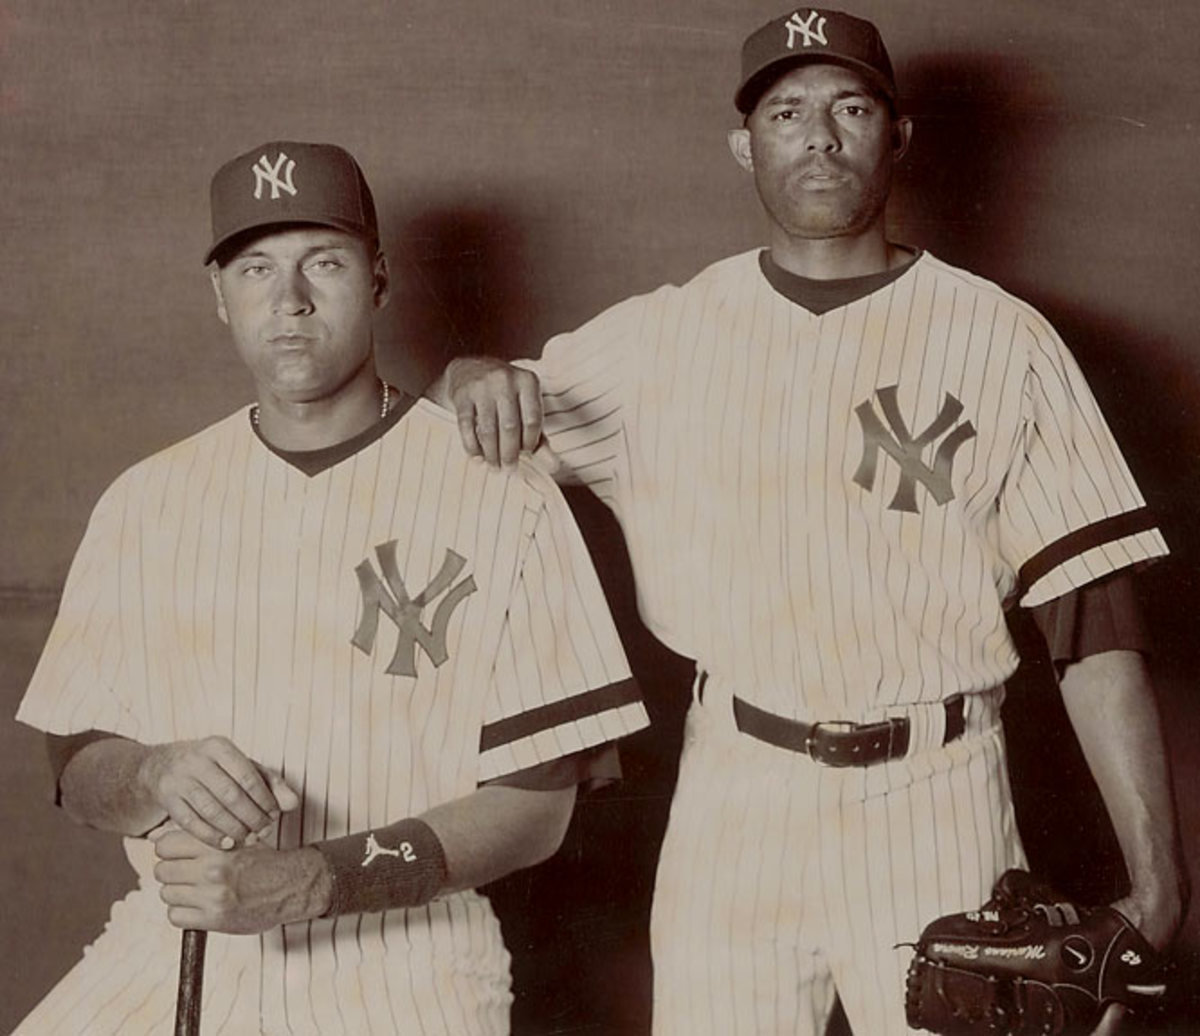 Flashback to 2014 when Yankees legend Derek Jeter's nephew went